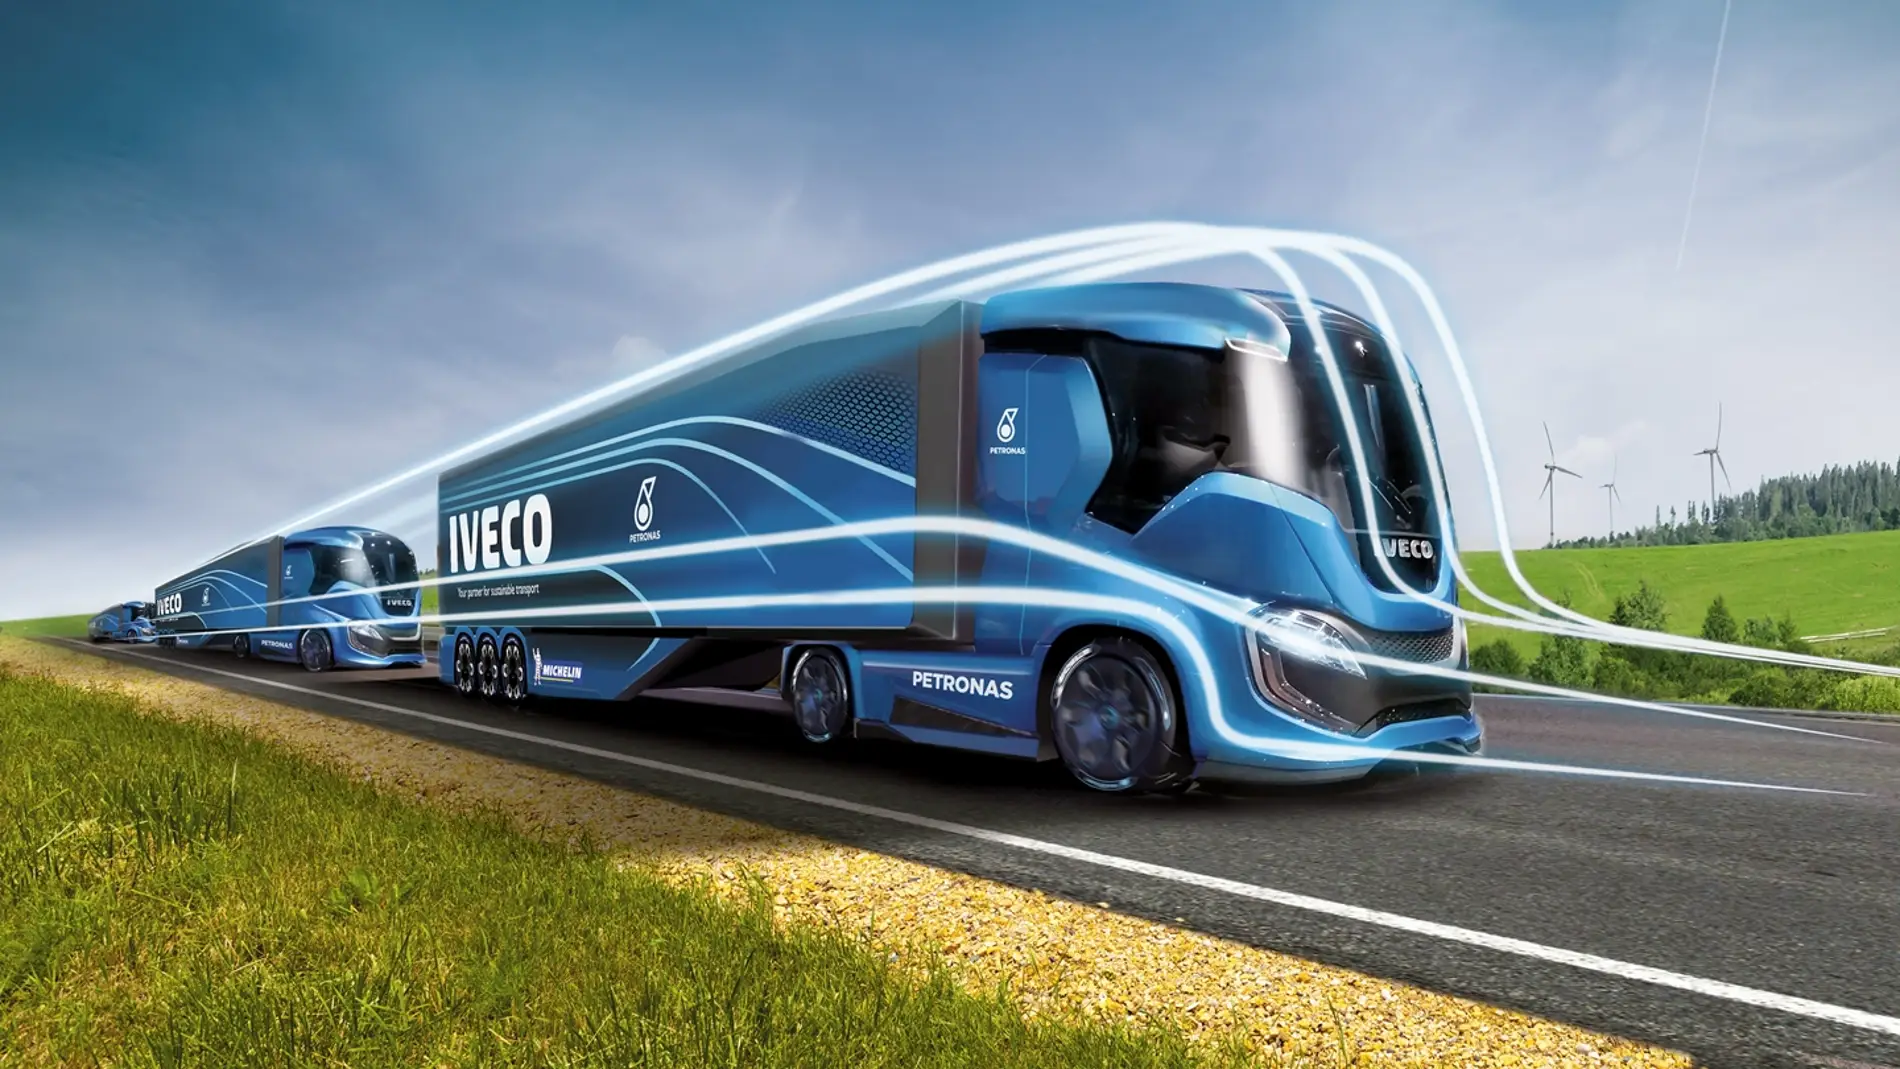 iveco-z-truck-2016-001.jpg